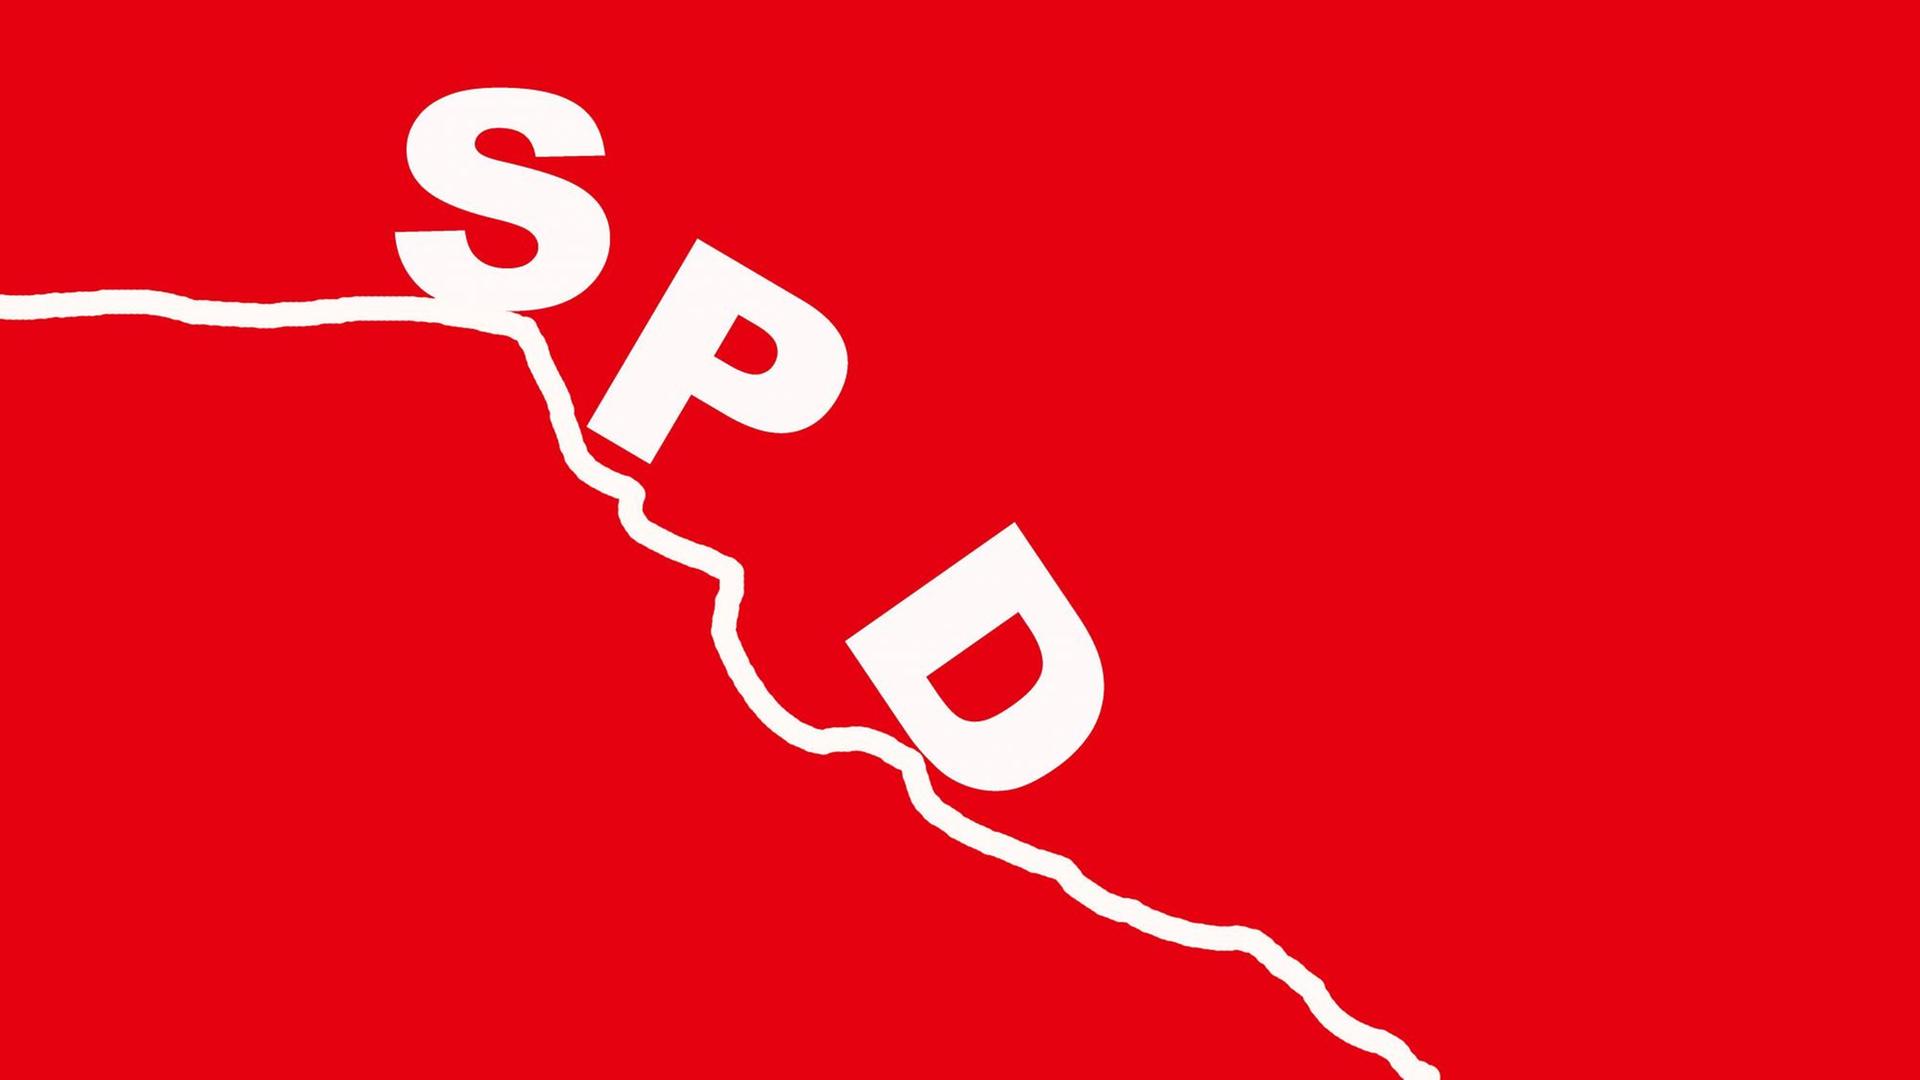 Roter Hintergrund, darauf eine absteigende Kurye und darauf puzeln die Buchstaben SPD nach unten.